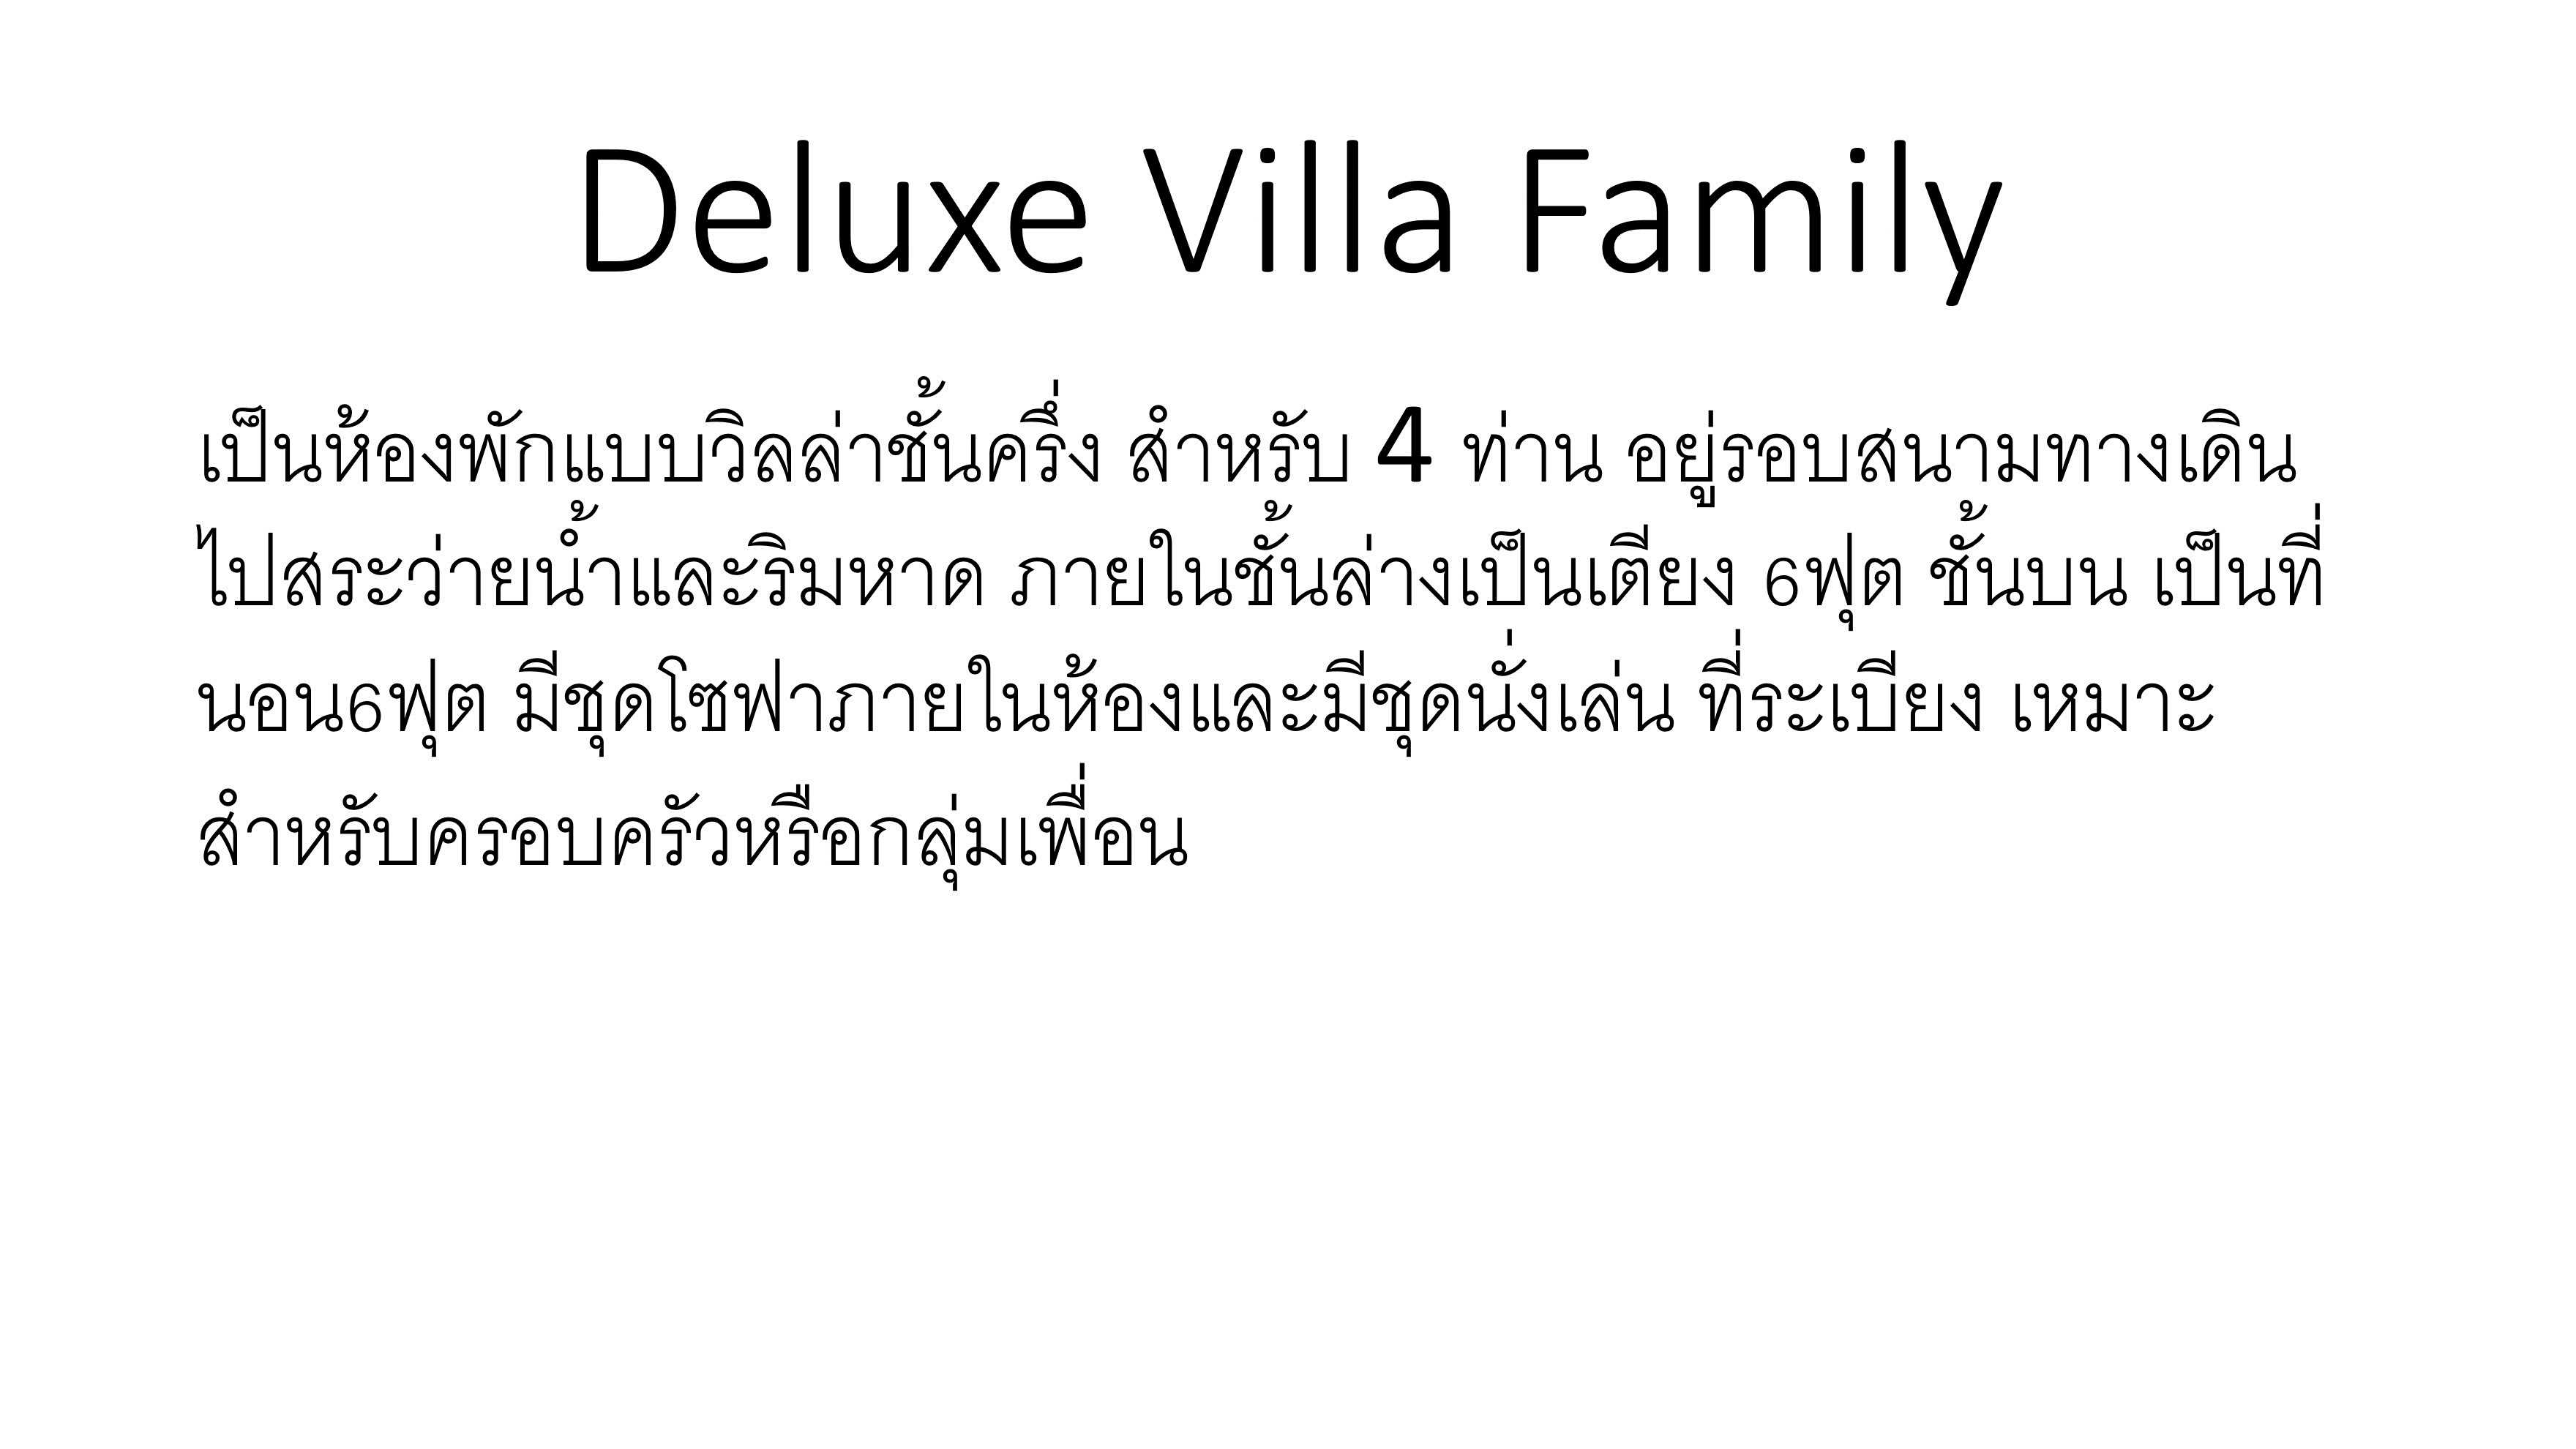 Deluxe villa family